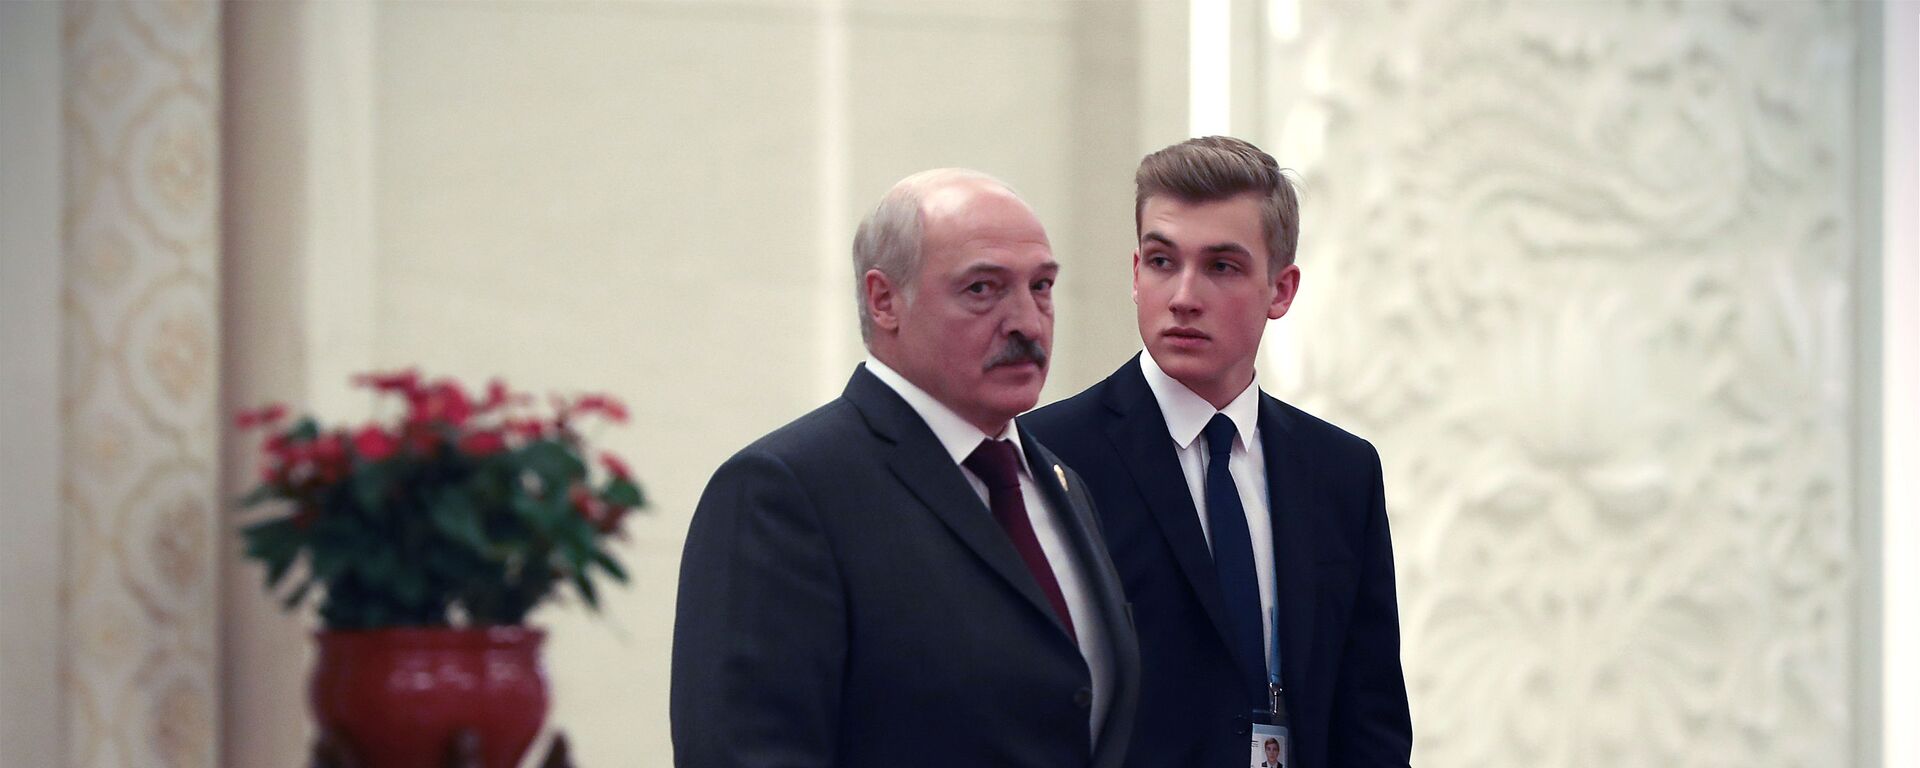 Tổng thống Belarus Alexandr Lukashenko và con trai Nikolai đến Trung Quốc 25.04.2019 - Sputnik Việt Nam, 1920, 30.04.2019